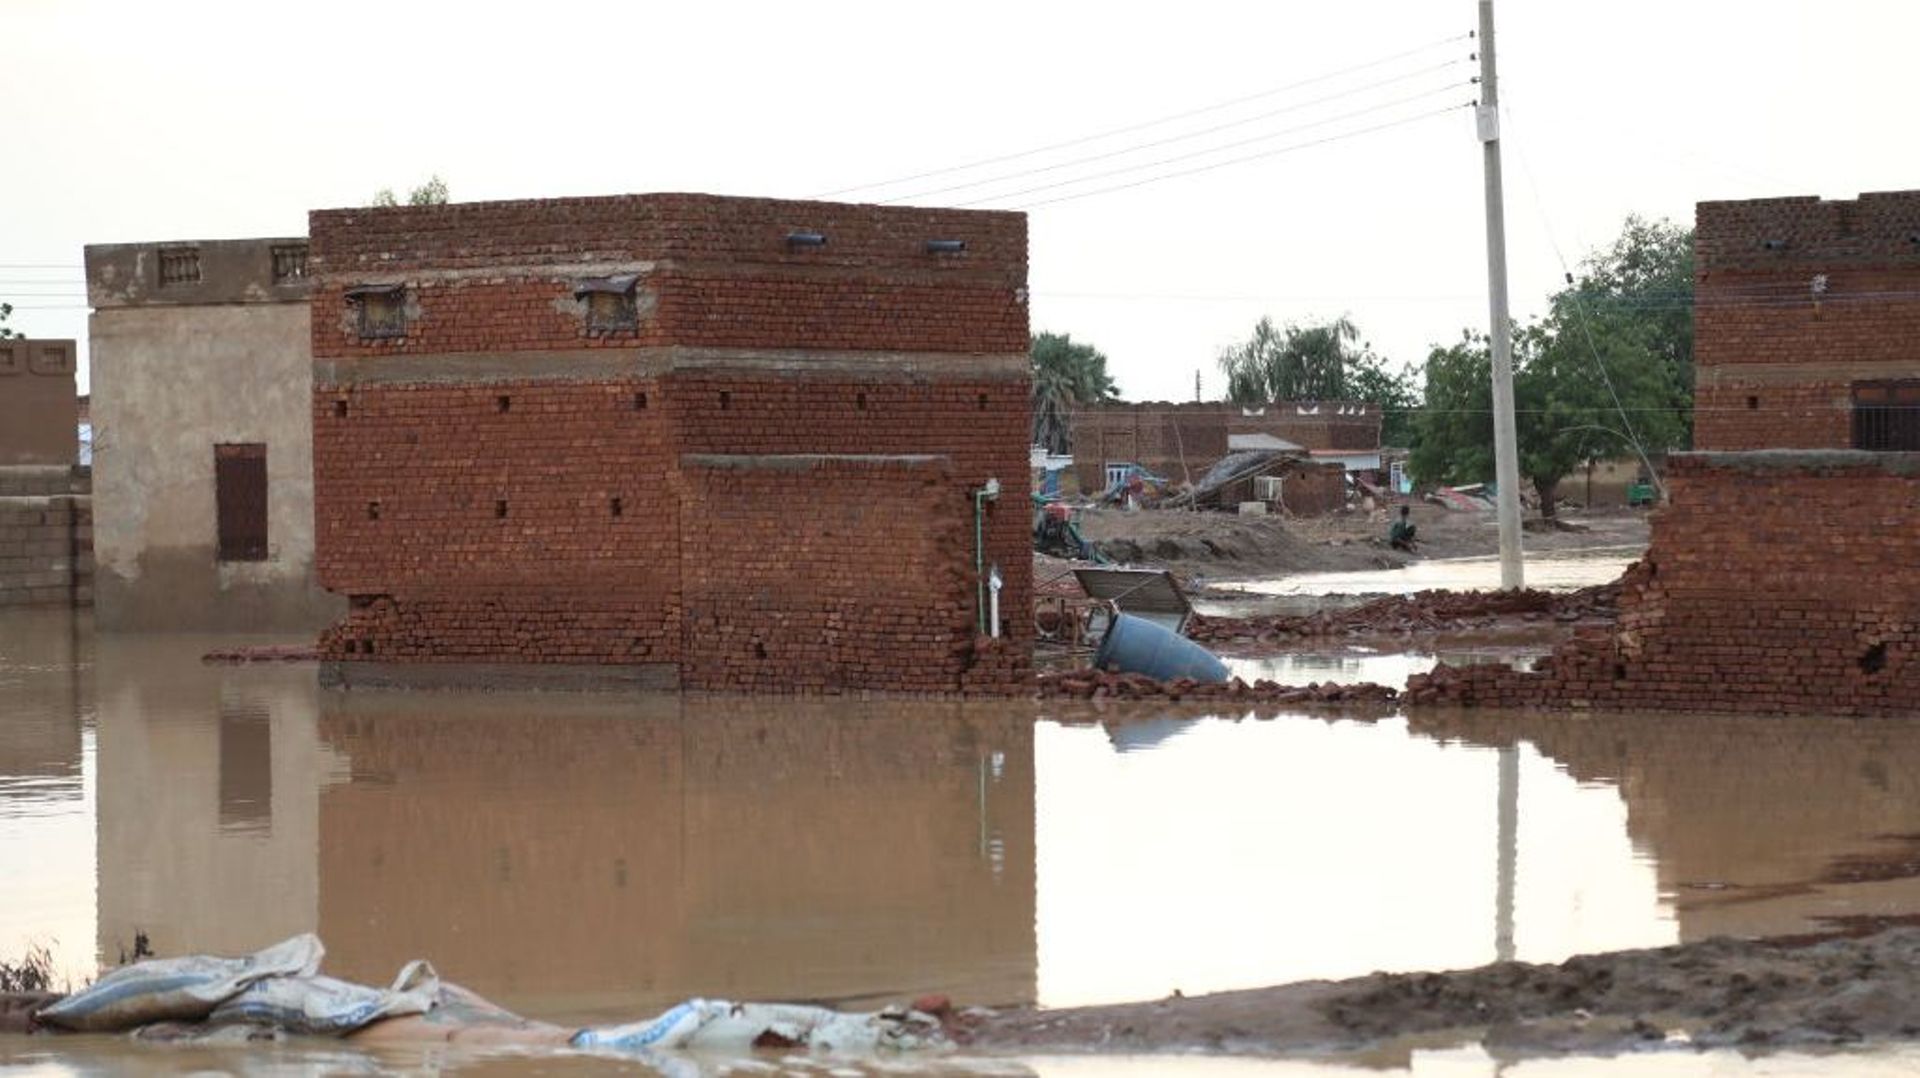 Une vue de la zone inondée suite aux fortes pluies qui ont causé de nombreux décès dans le district d'Aboud à Al Jazirah, Soudan, le 20 août 2022.